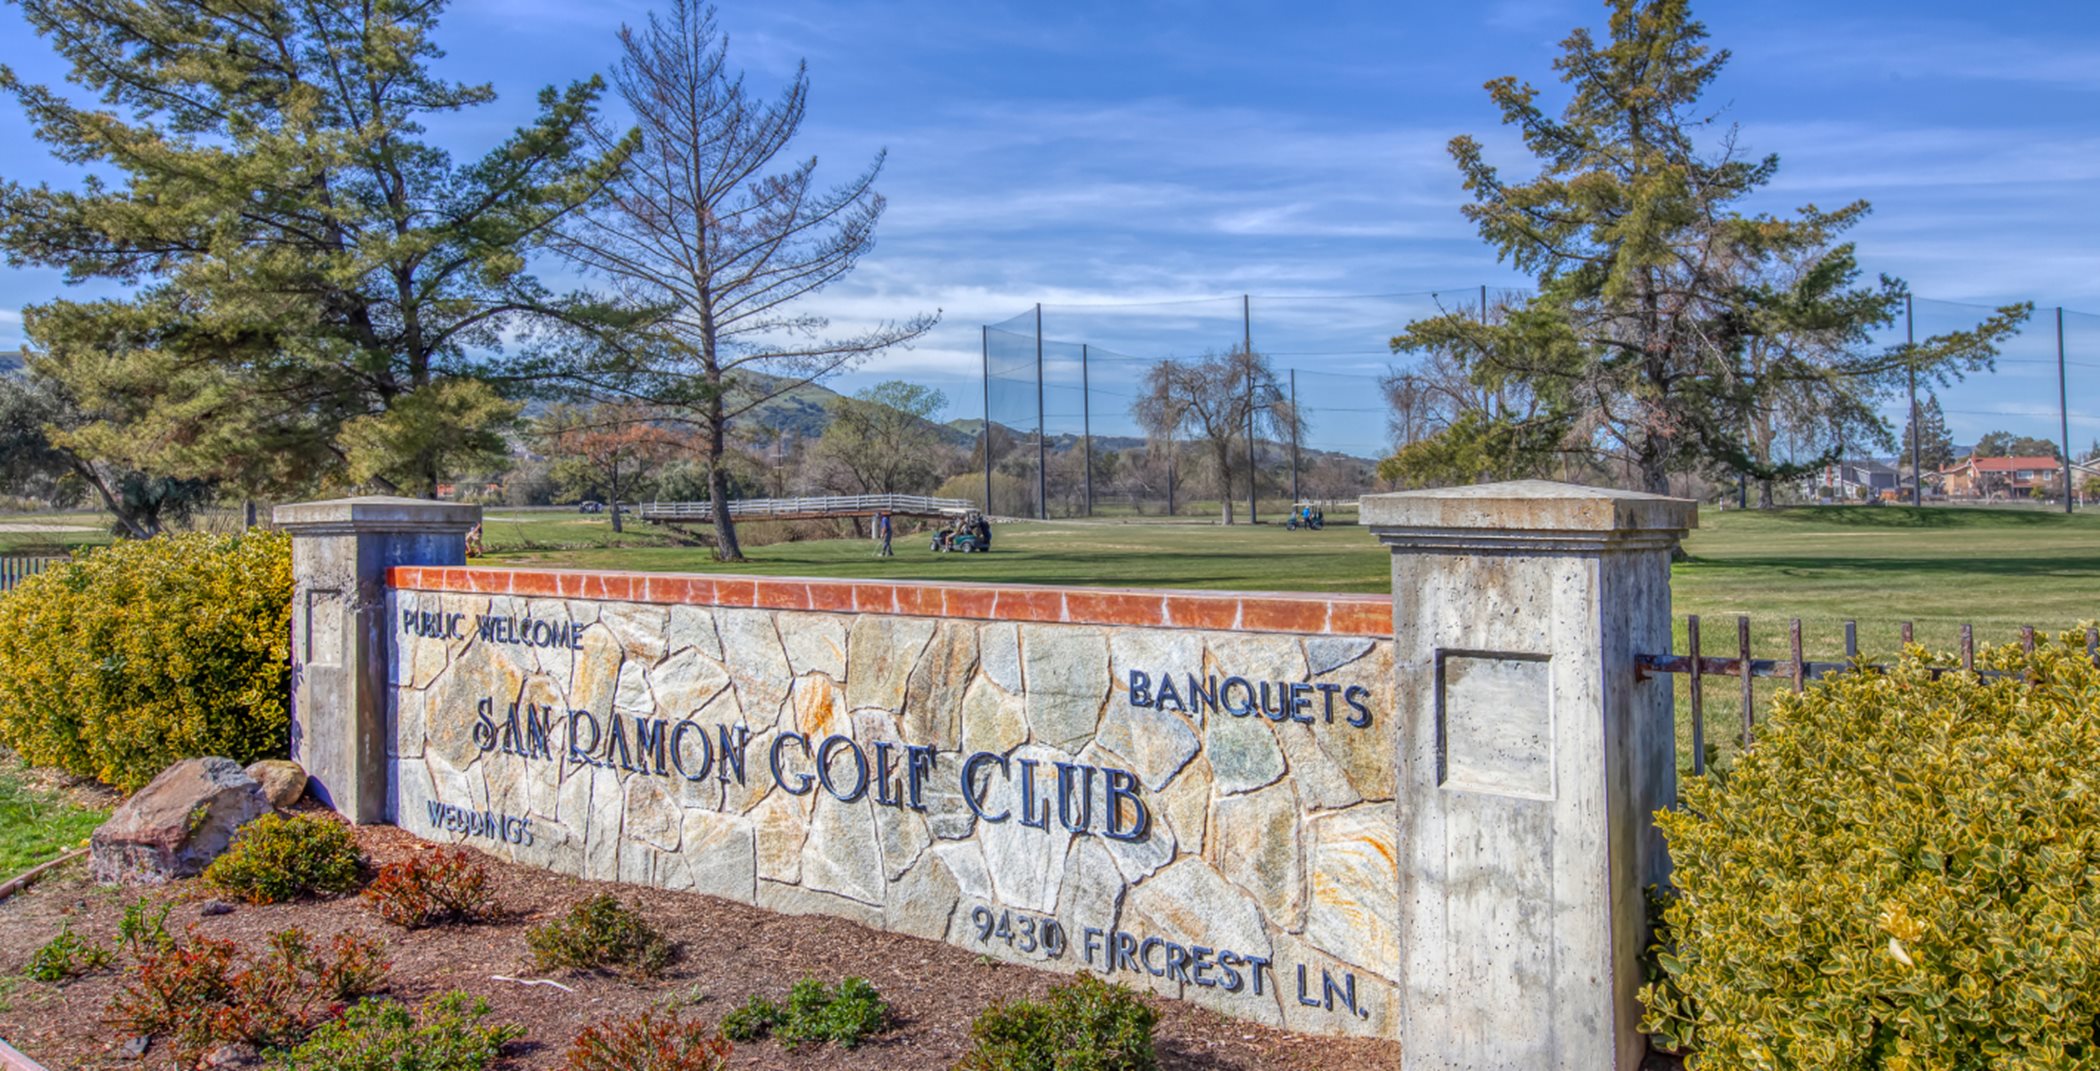 San Ramon golf club